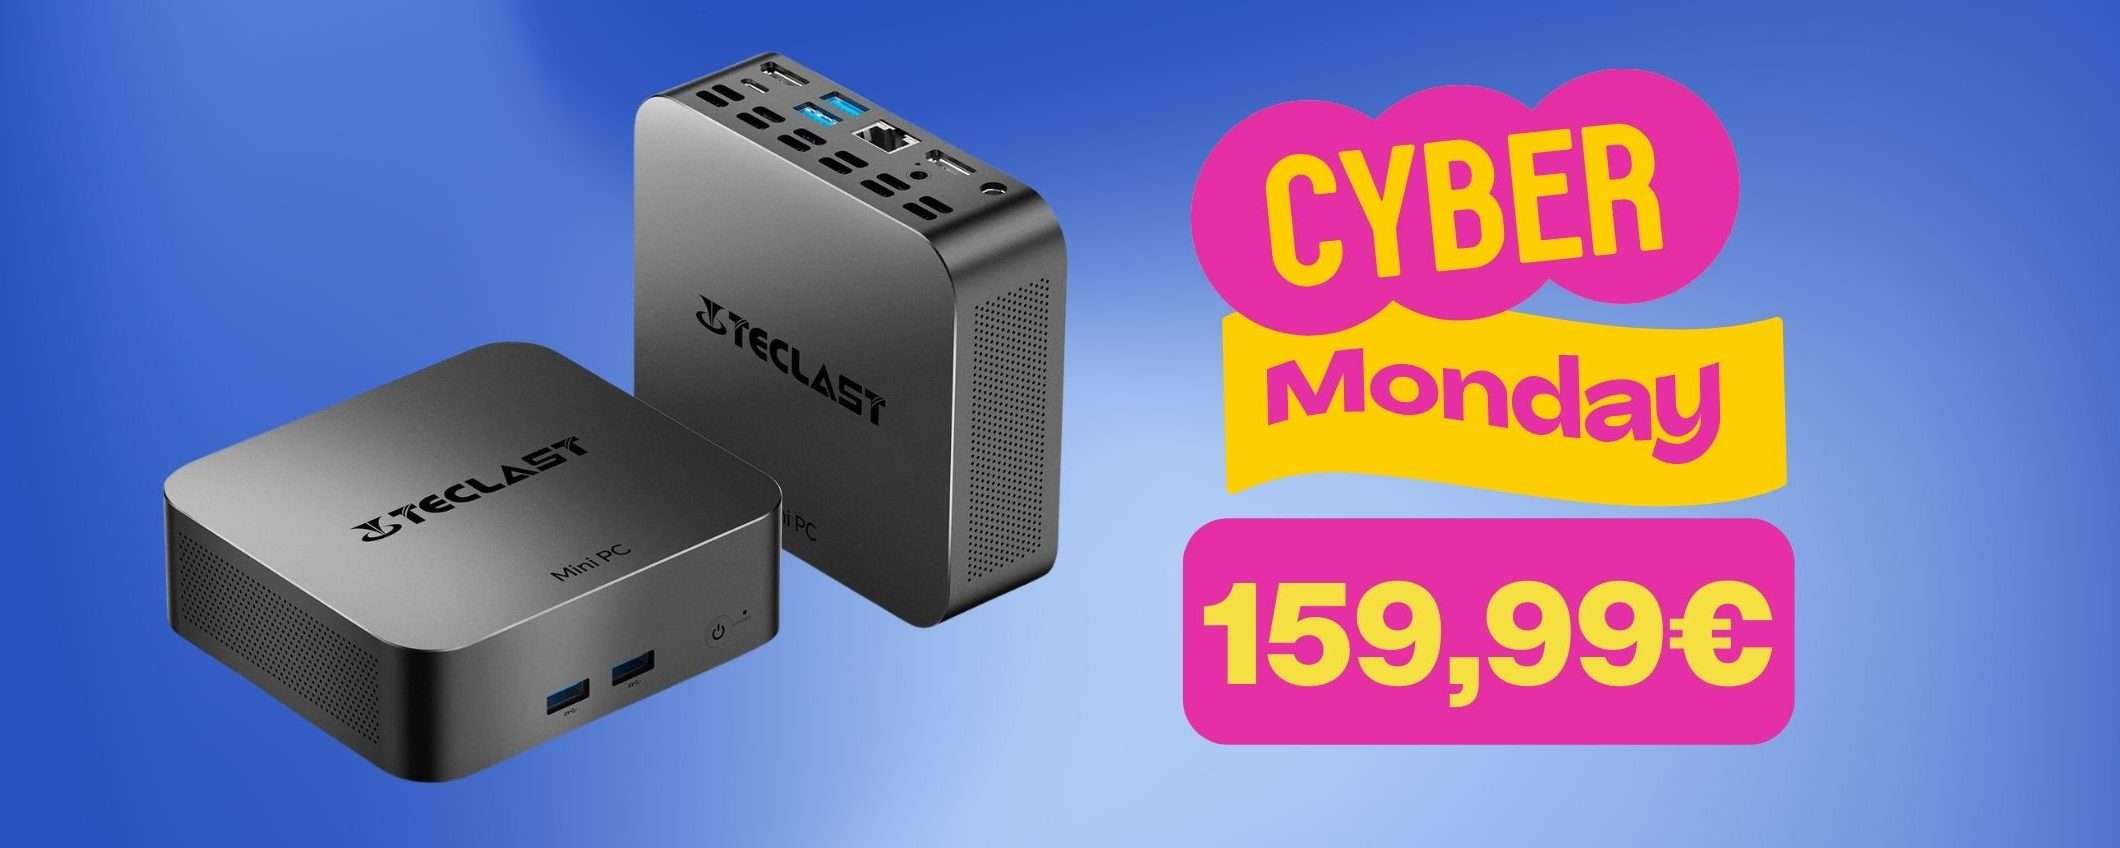 Cyber Monday: Mini PC (16GB + SSD 512GB) a 159€ con doppio sconto